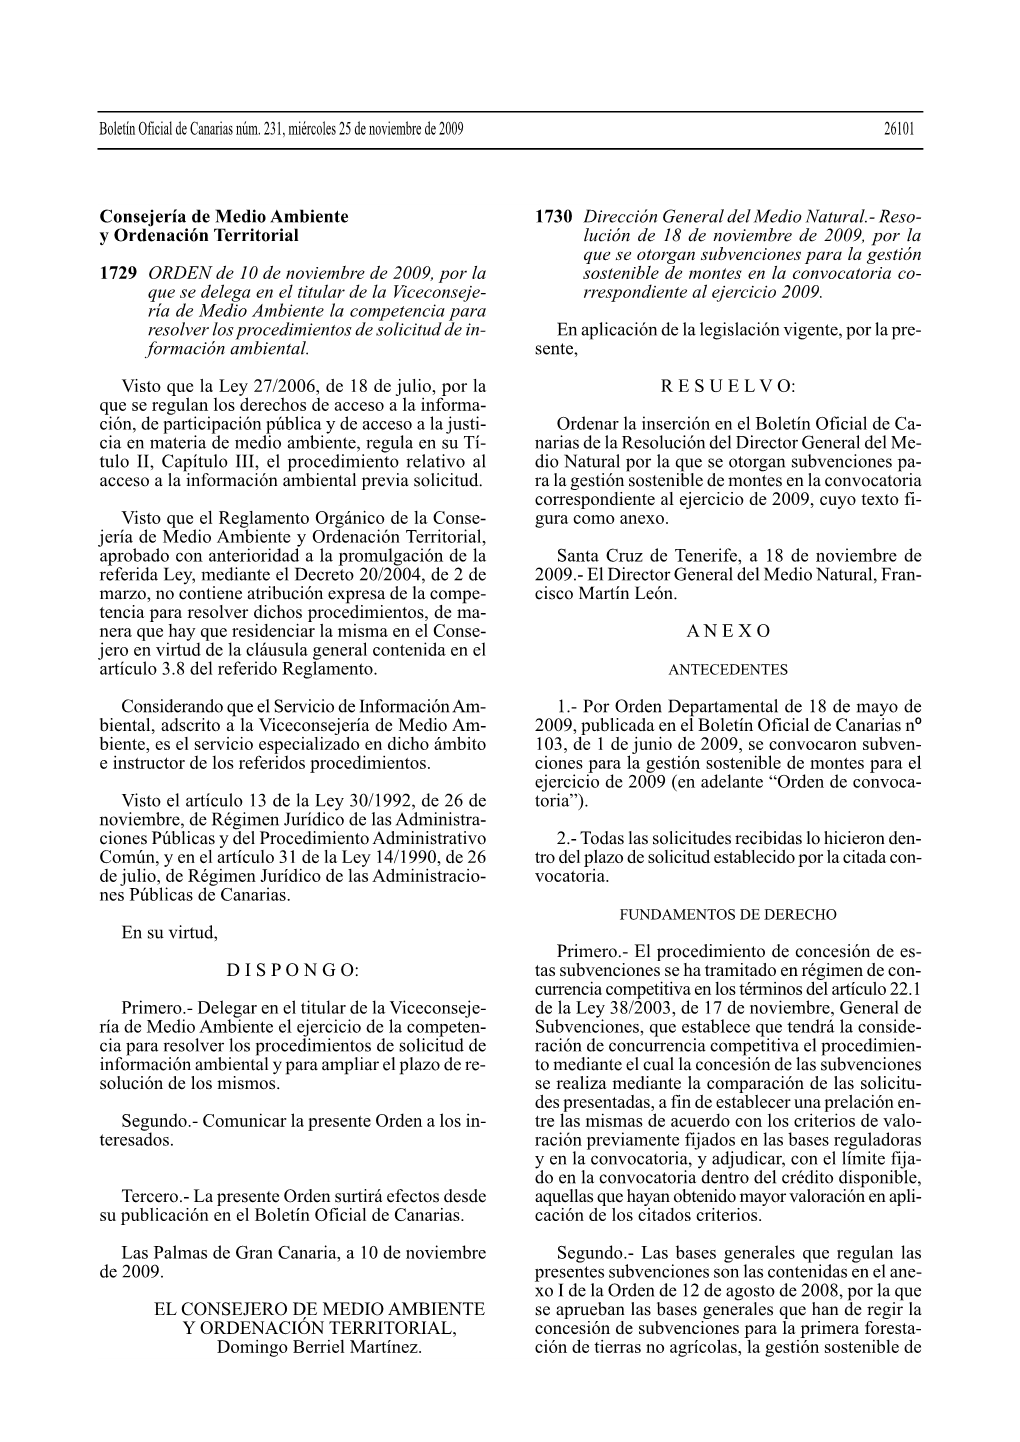 Consejería De Medio Ambiente Y Ordenación Territorial 1729